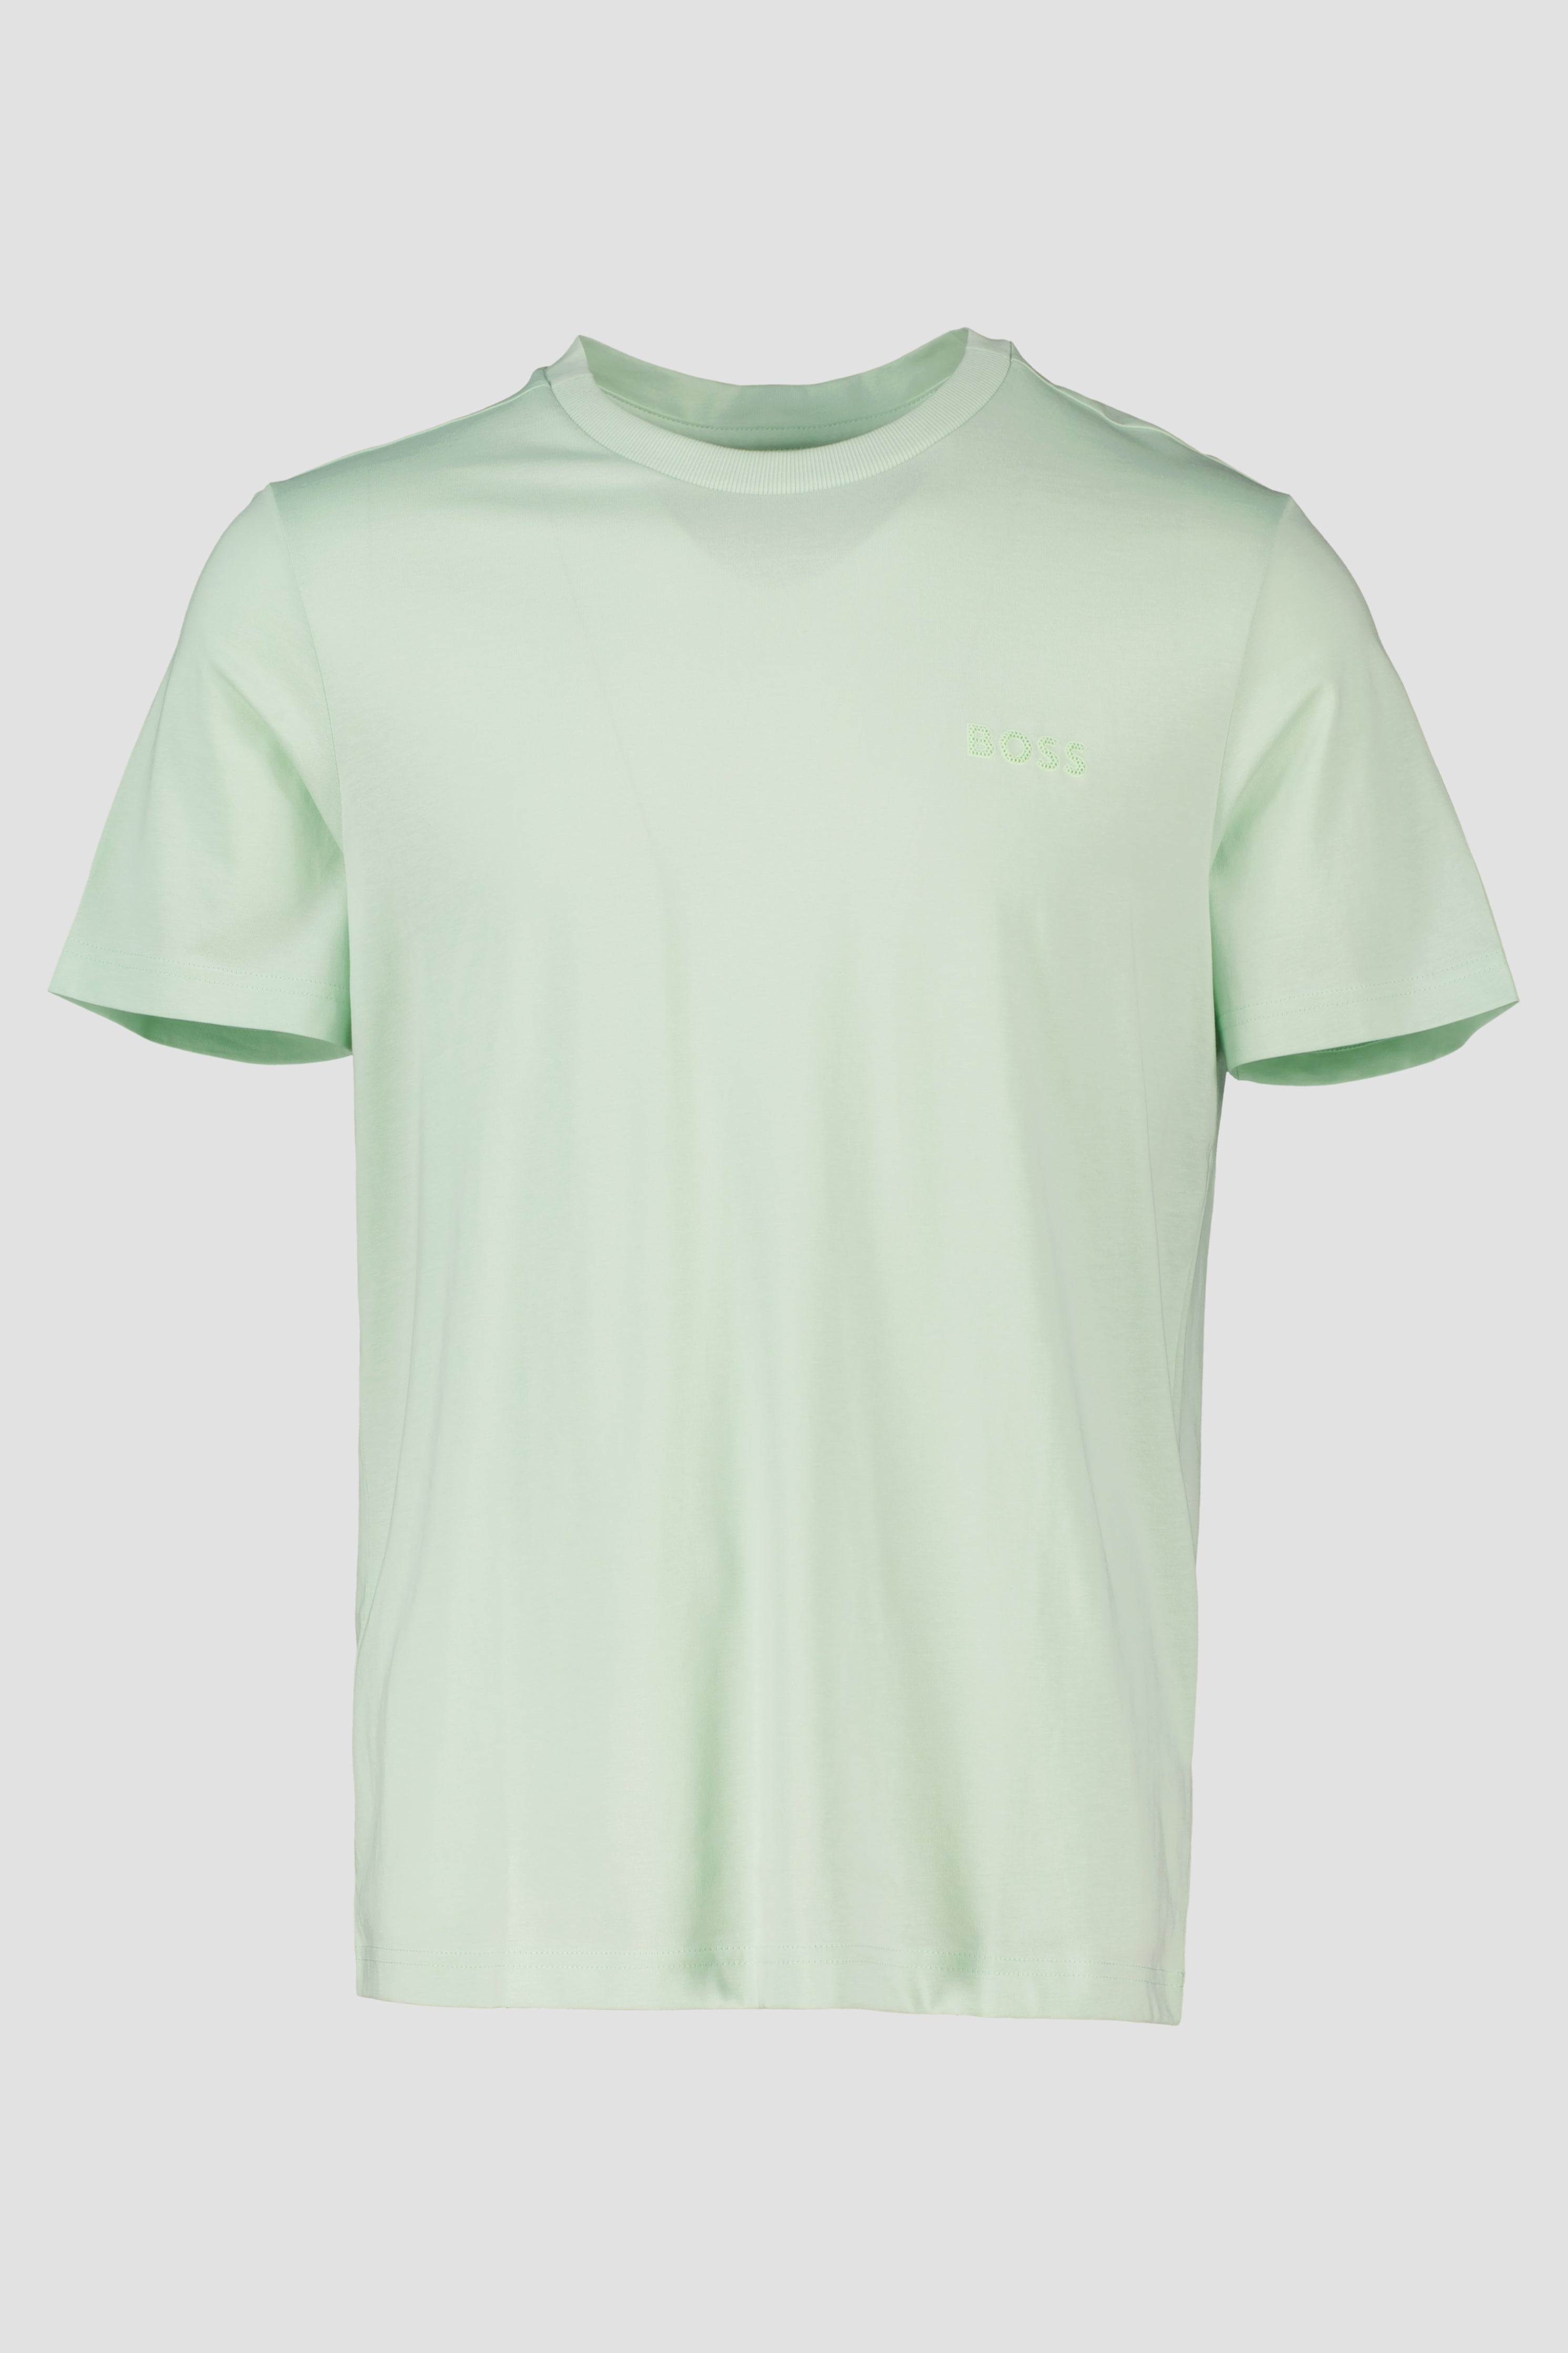 Men's BOSS Green Tee 12 Open Green T Shirt